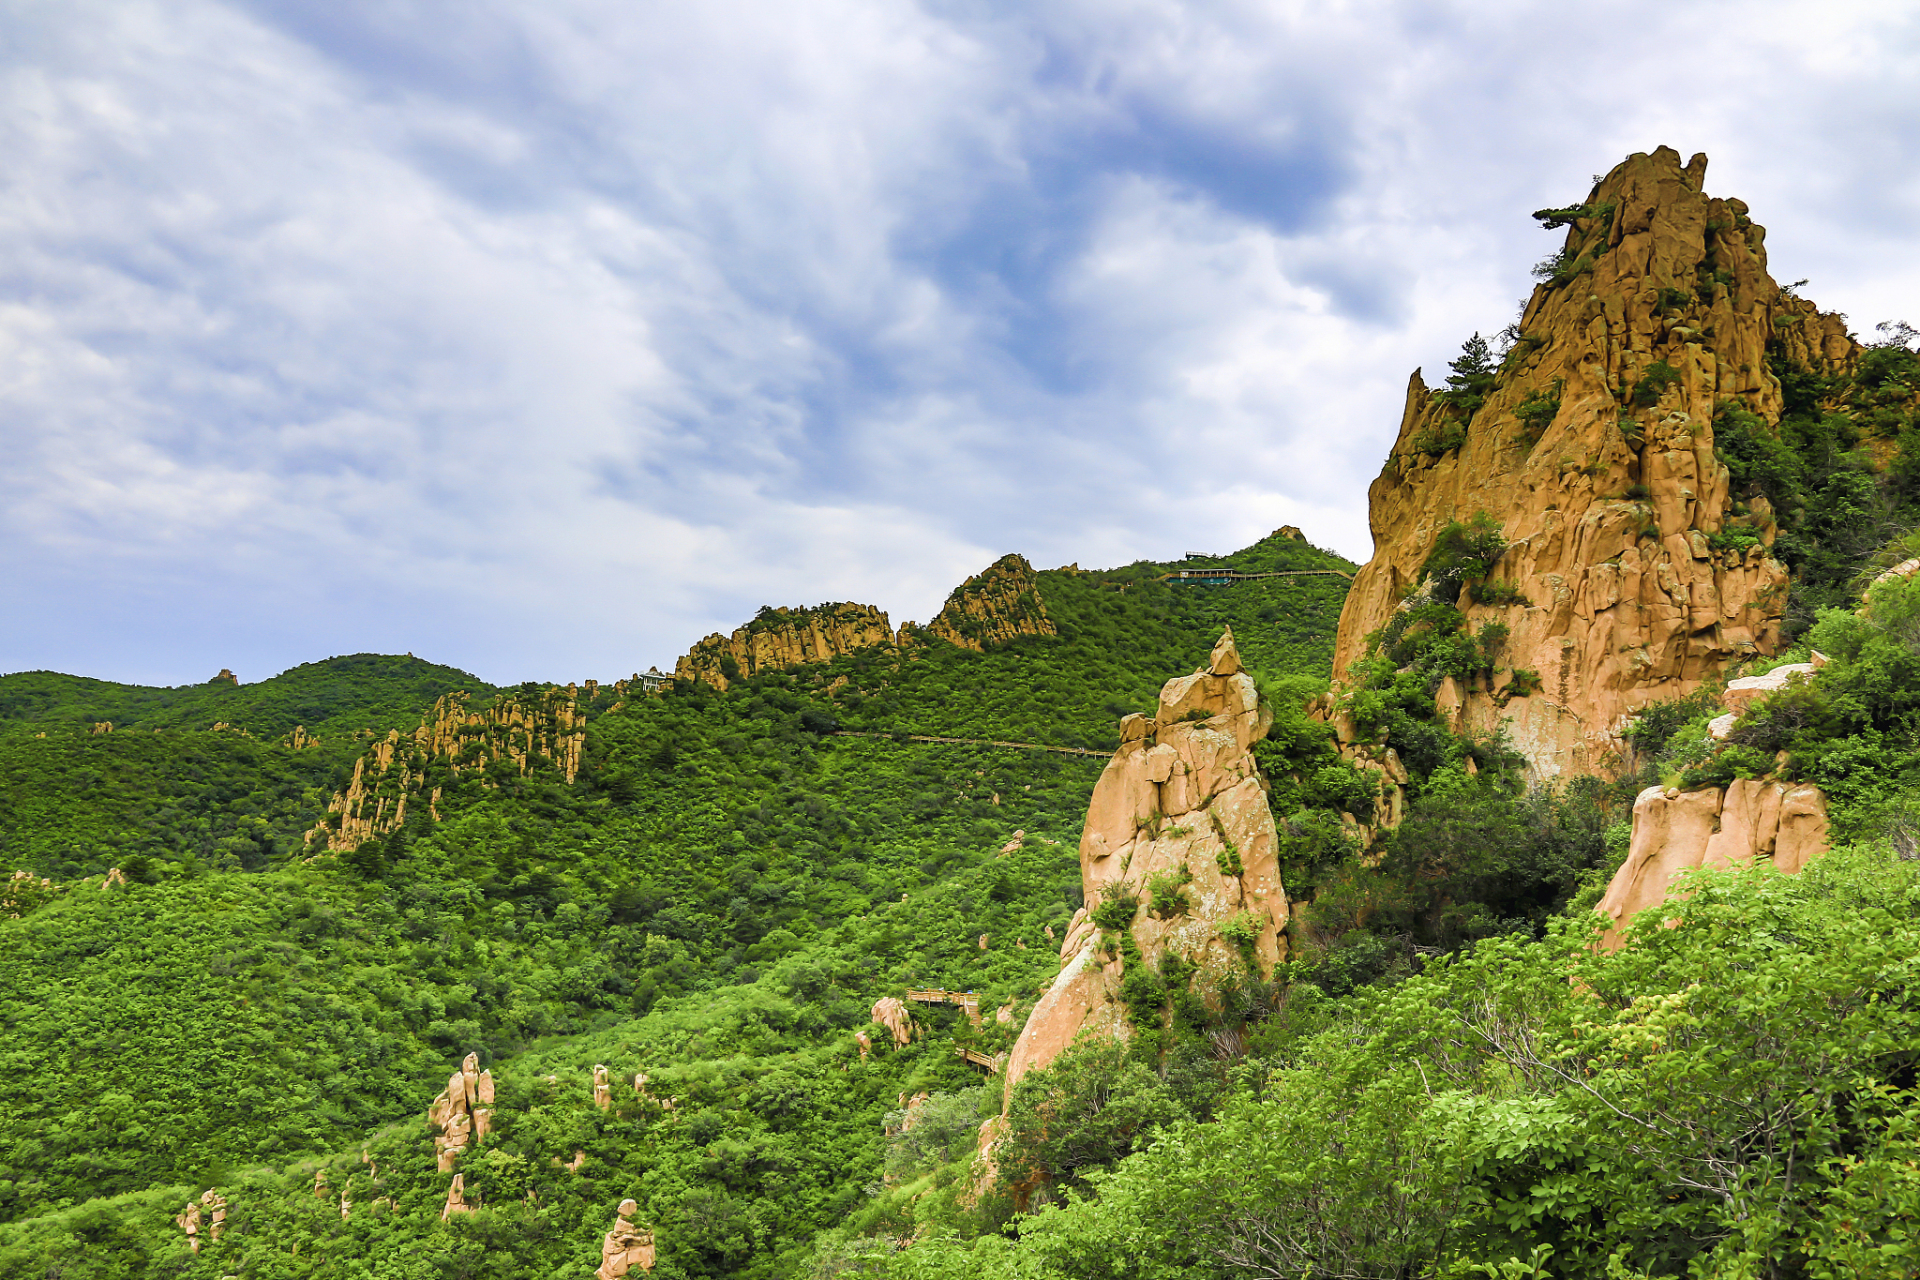 大黑山国家森林公园,不仅仅是一座山,更是一处蕴藏着奇峰怪石,北国